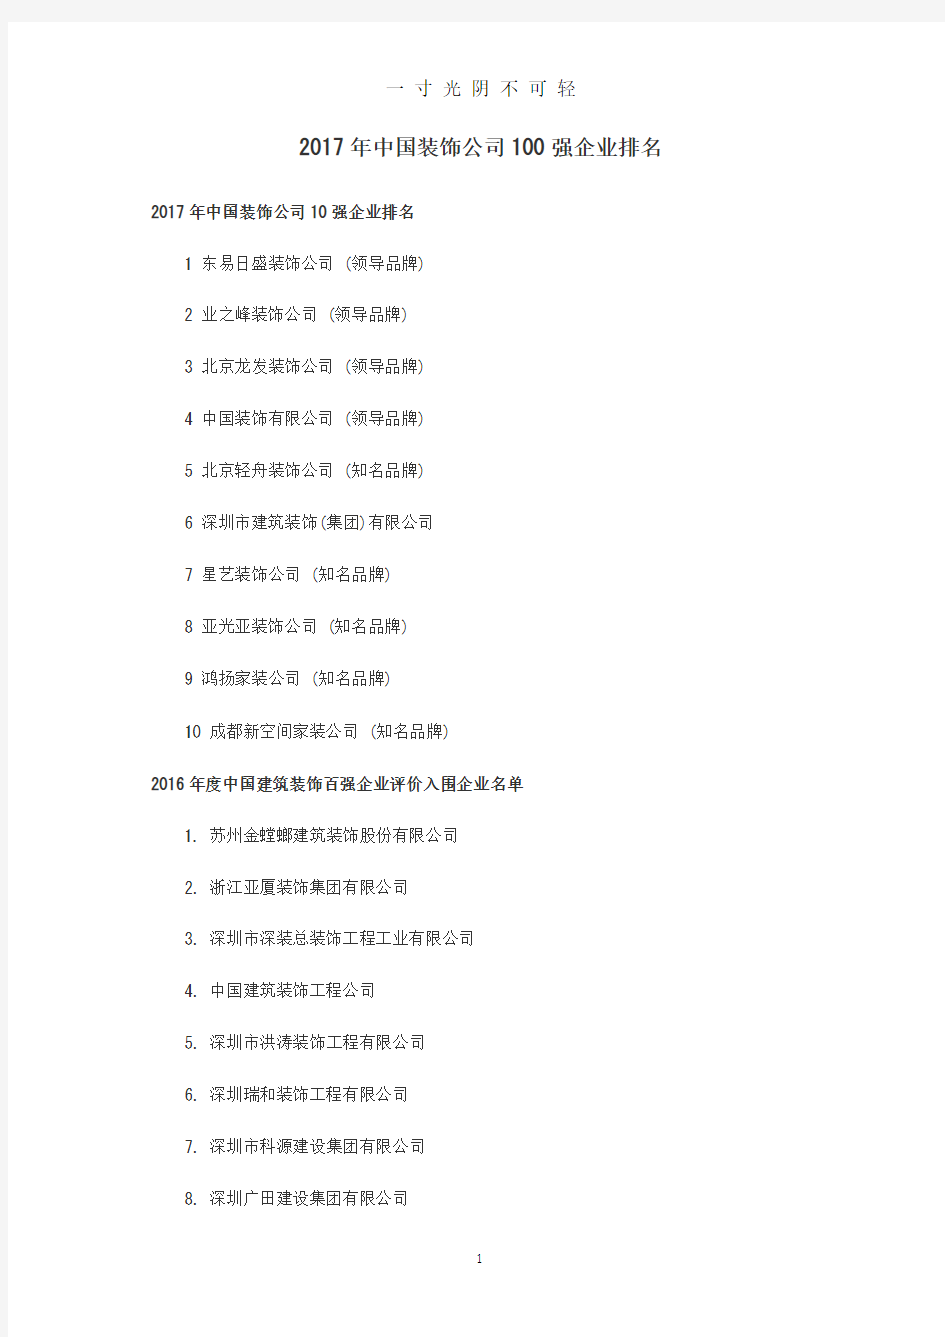 中国装饰公司100强企业排名.pdf